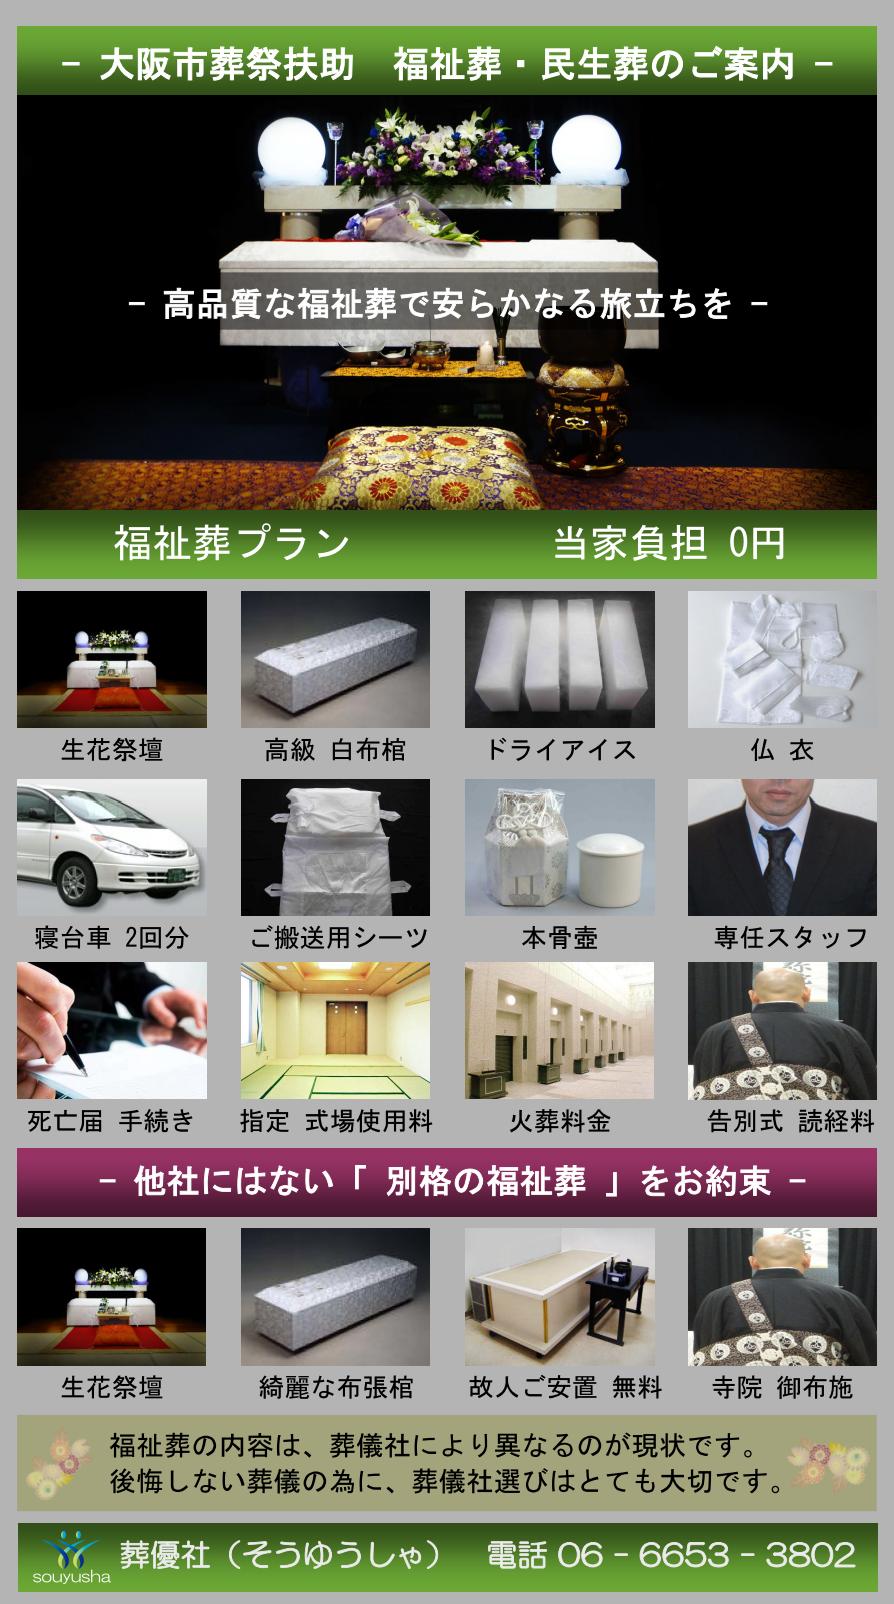 大阪市 阿倍野区での福祉葬、生活保護者のお葬式のご案内